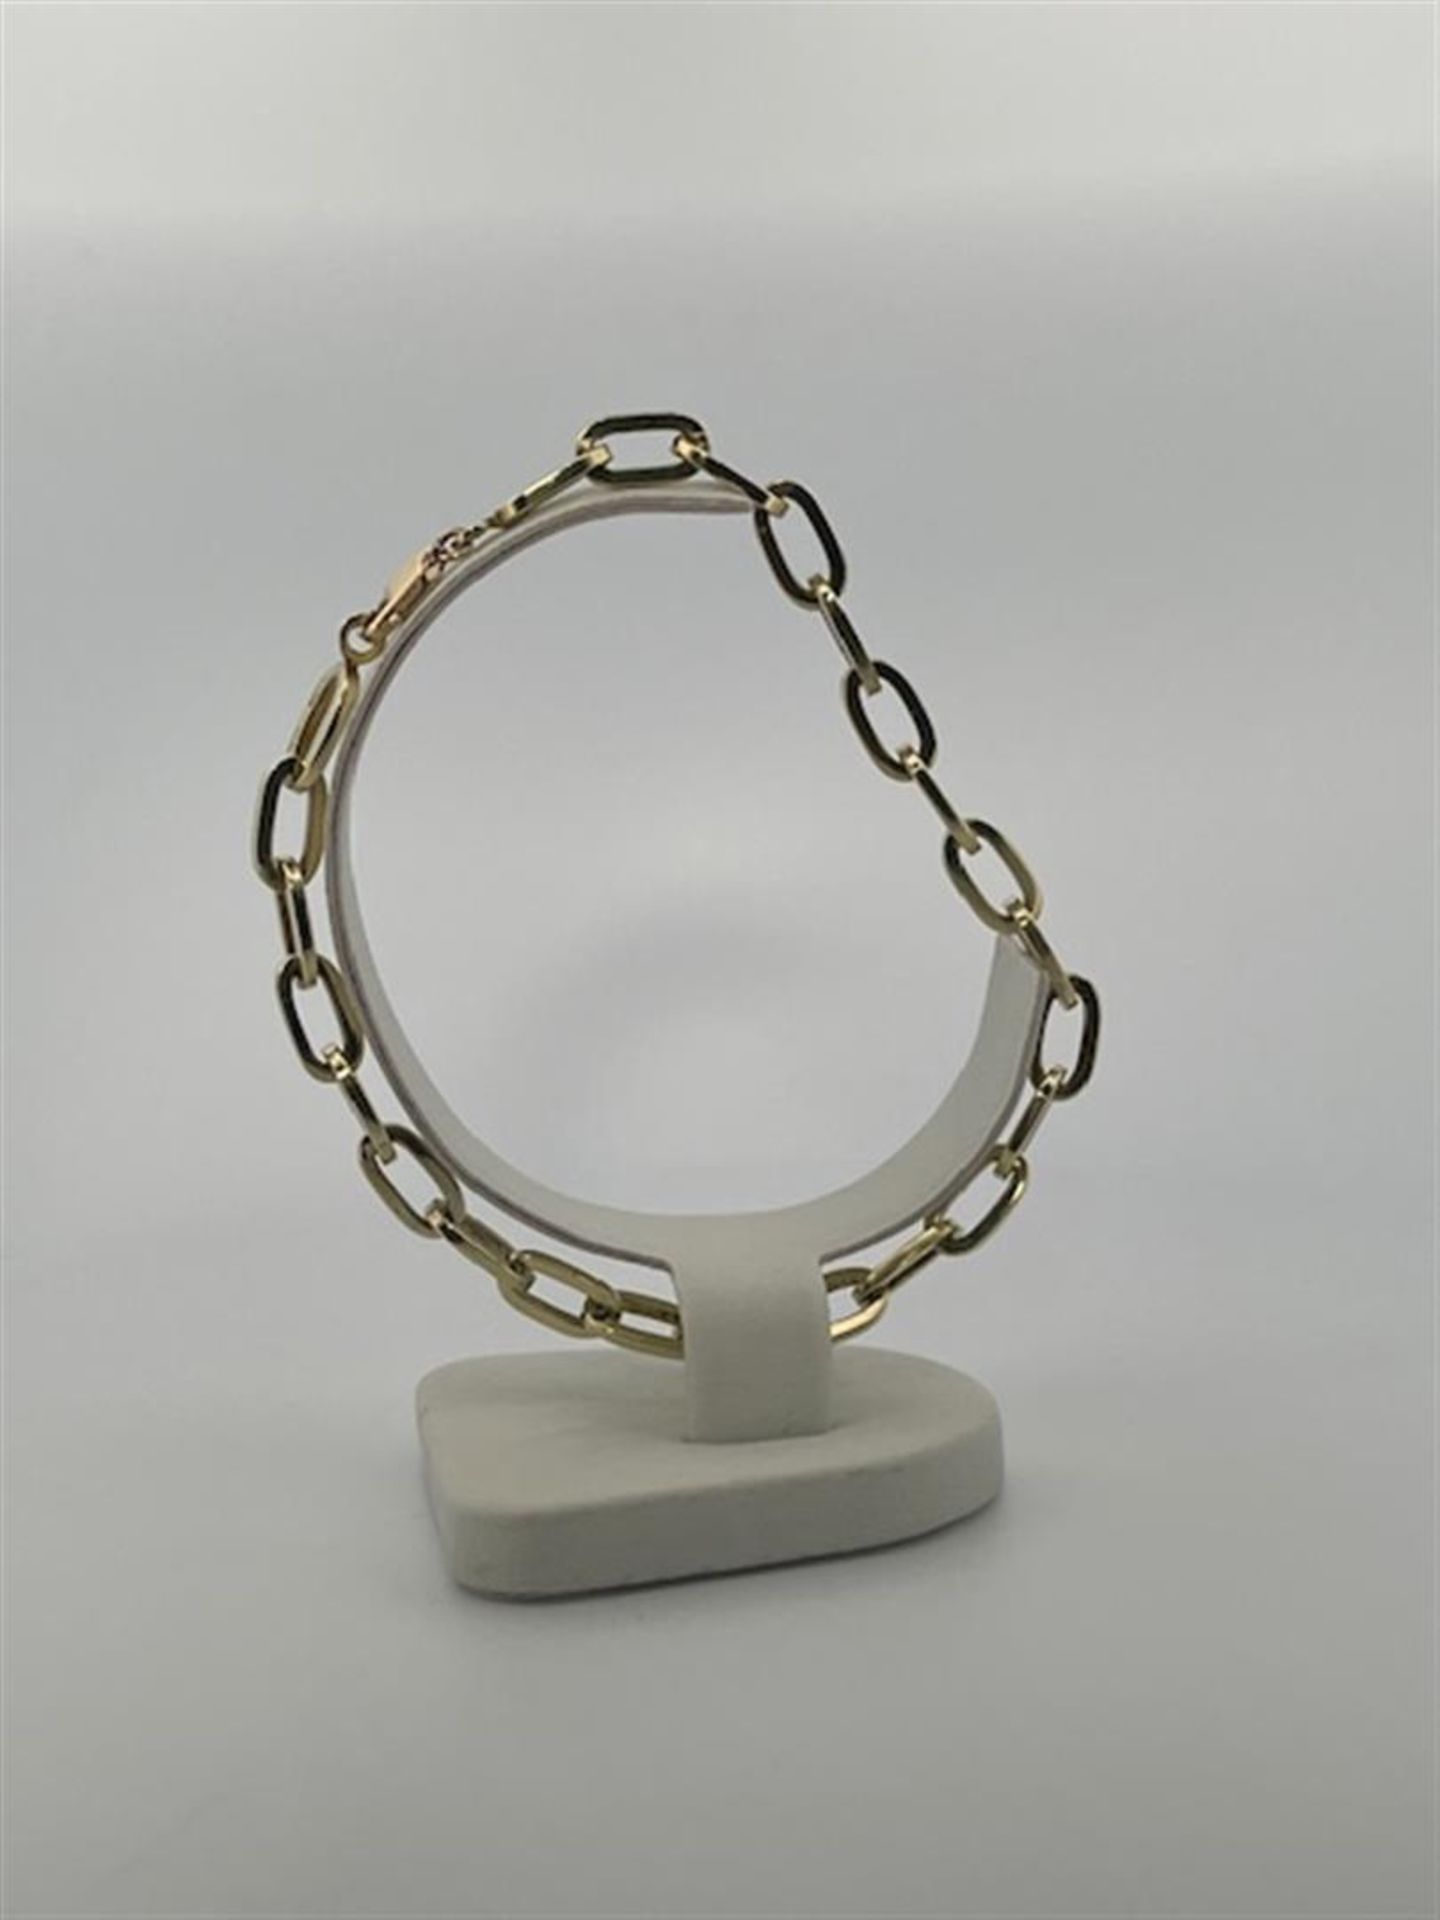 14kt yellow gold link bracelet.
Sturdy link bracelet. Nice to hang charms on!
Bracelet length: 21cm. - Bild 4 aus 5